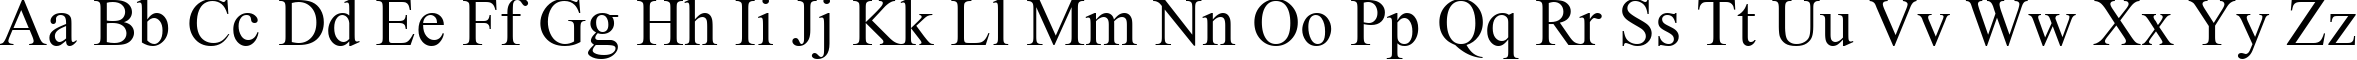 Пример написания английского алфавита шрифтом font239